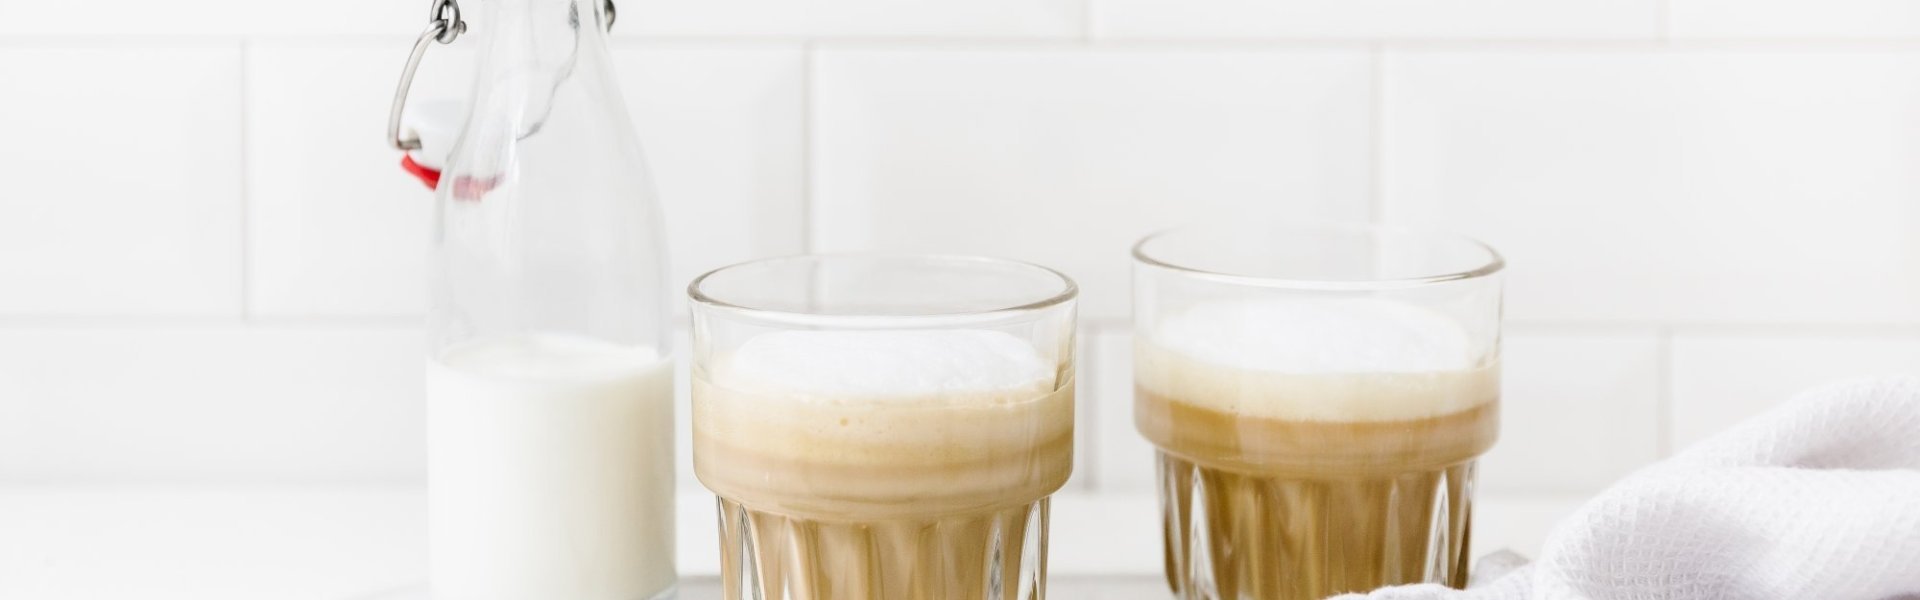 Latte geschonken in doorzichtige glazen. Er staat een klein halfvol melkflesje naast. Alles is gepresenteerd op een wit dienblad met koperen lepeltje, linnen theedoek en enkele koffiebonen ter versiering. 